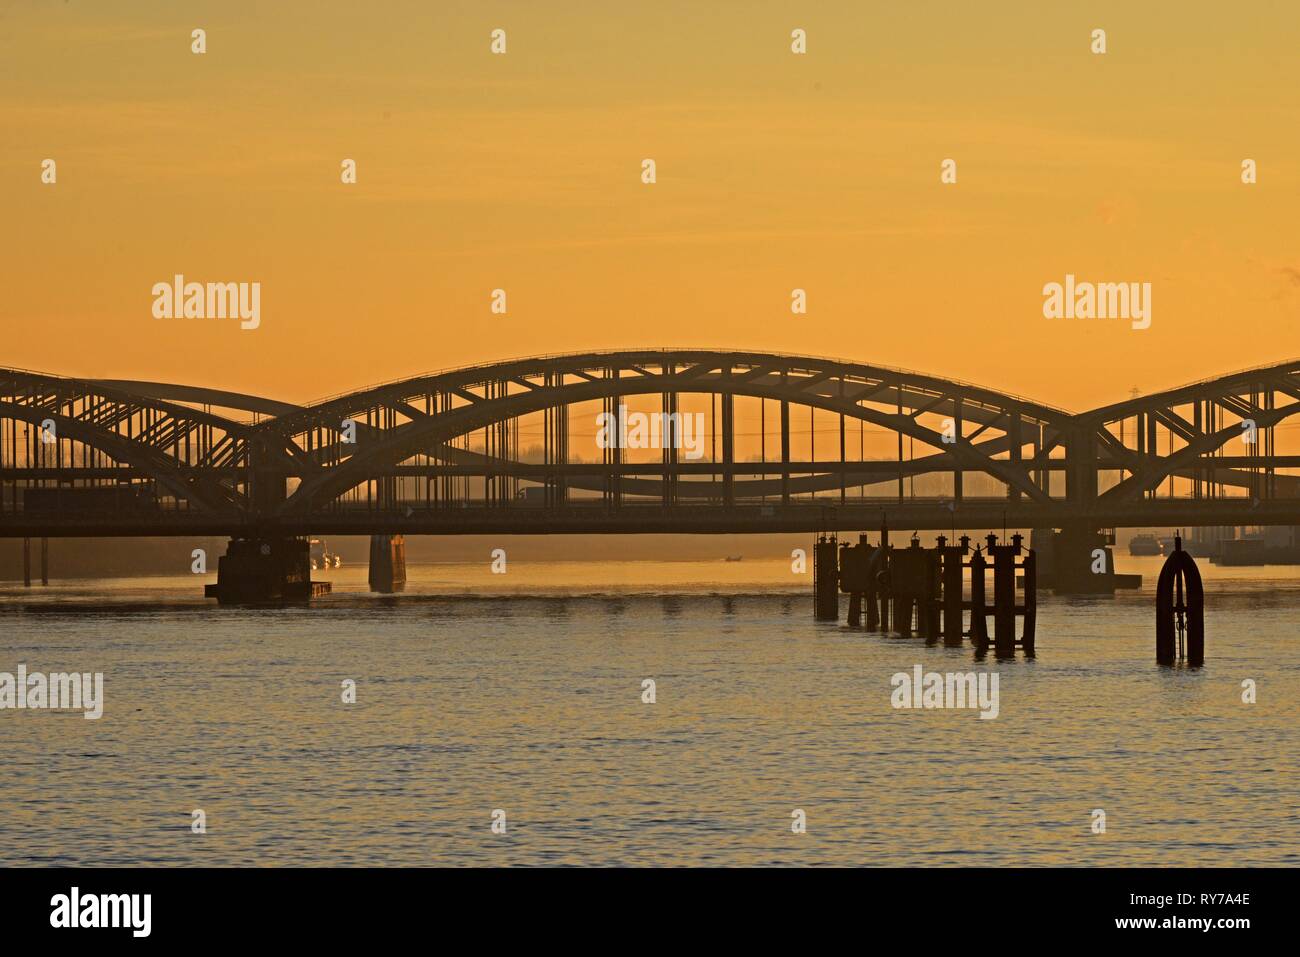 Freeport Elba puente, puente de acero sobre el río Elba al atardecer, Hamburgo, Alemania. Foto de stock